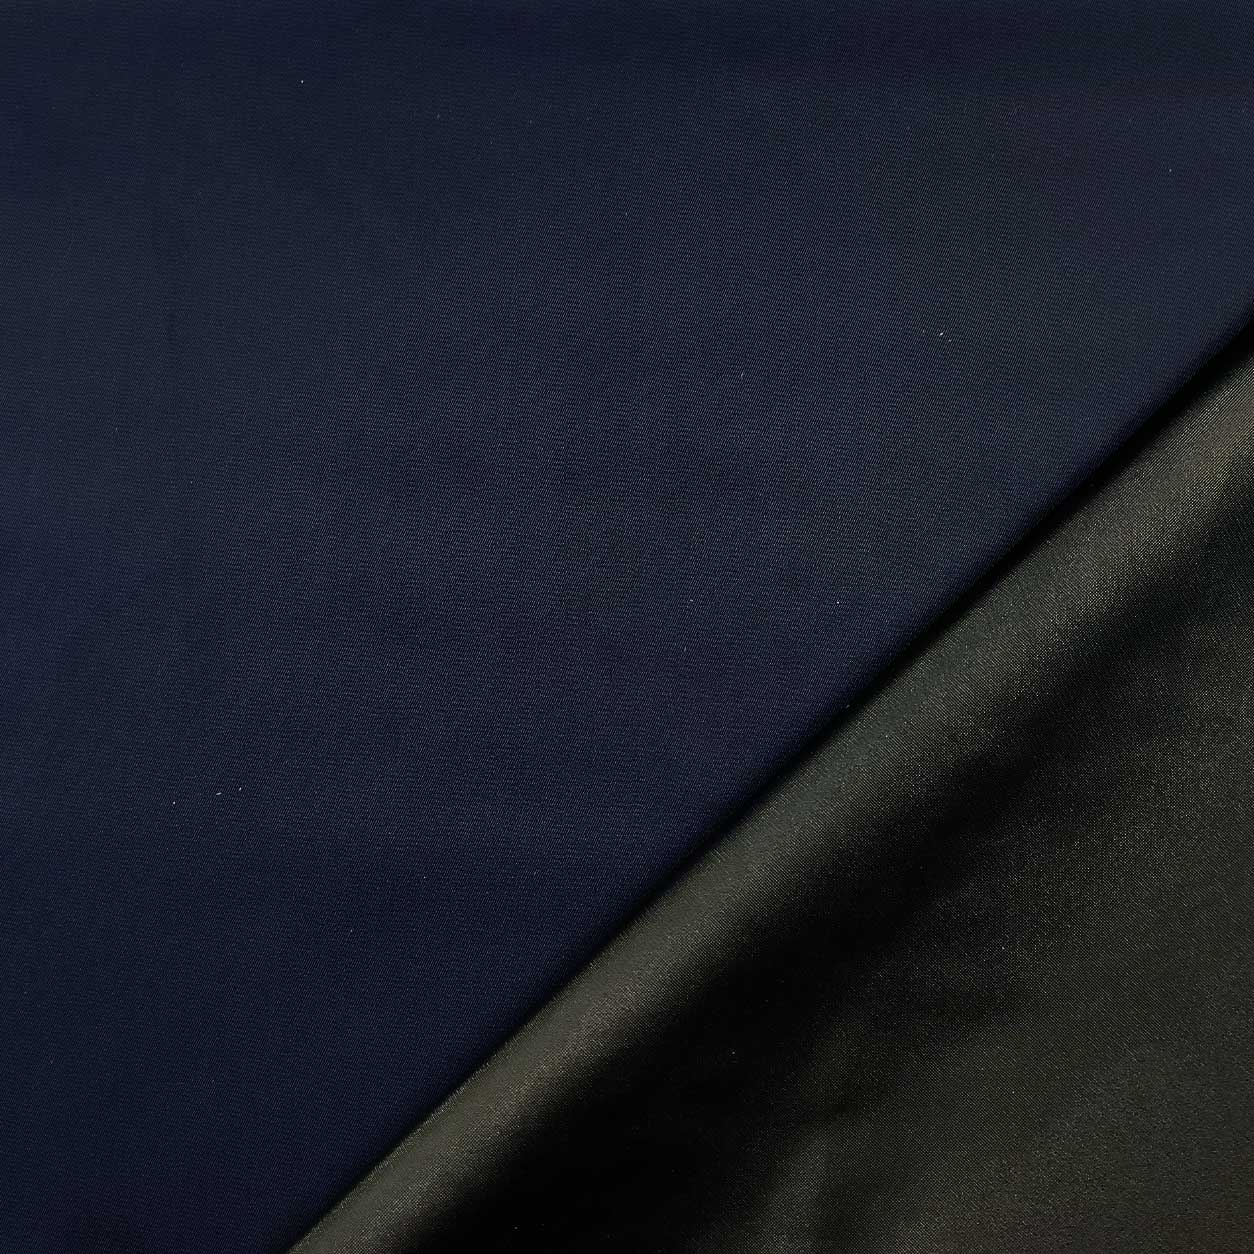 tessuto impermeabile per borse blu scuro